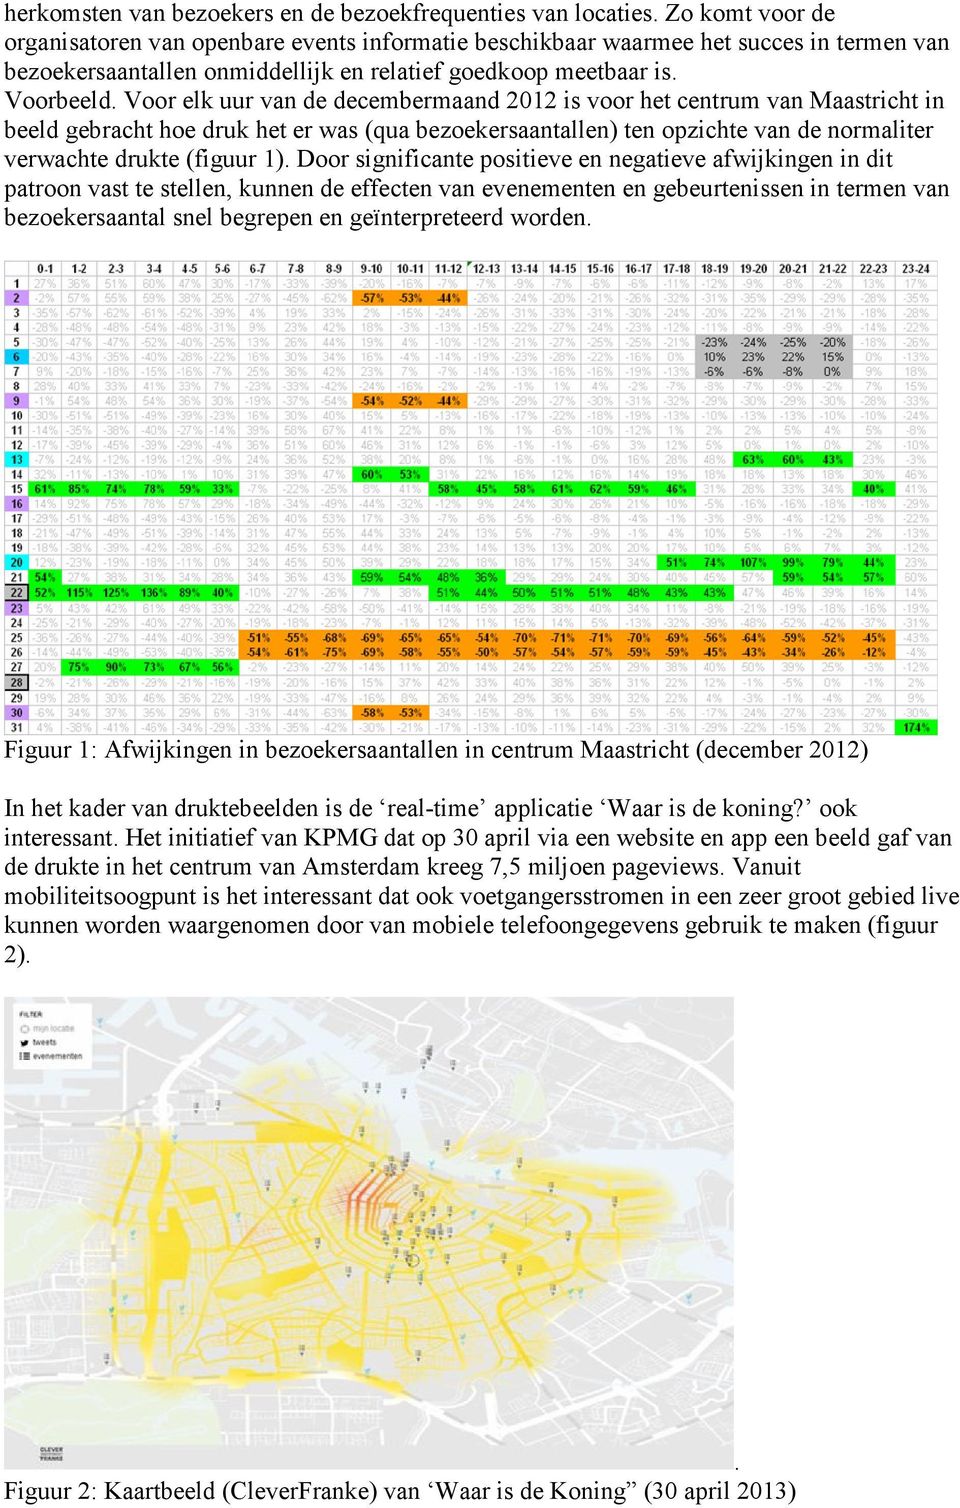 Voor elk uur van de decembermaand 2012 is voor het centrum van Maastricht in beeld gebracht hoe druk het er was (qua bezoekersaantallen) ten opzichte van de normaliter verwachte drukte (figuur 1).